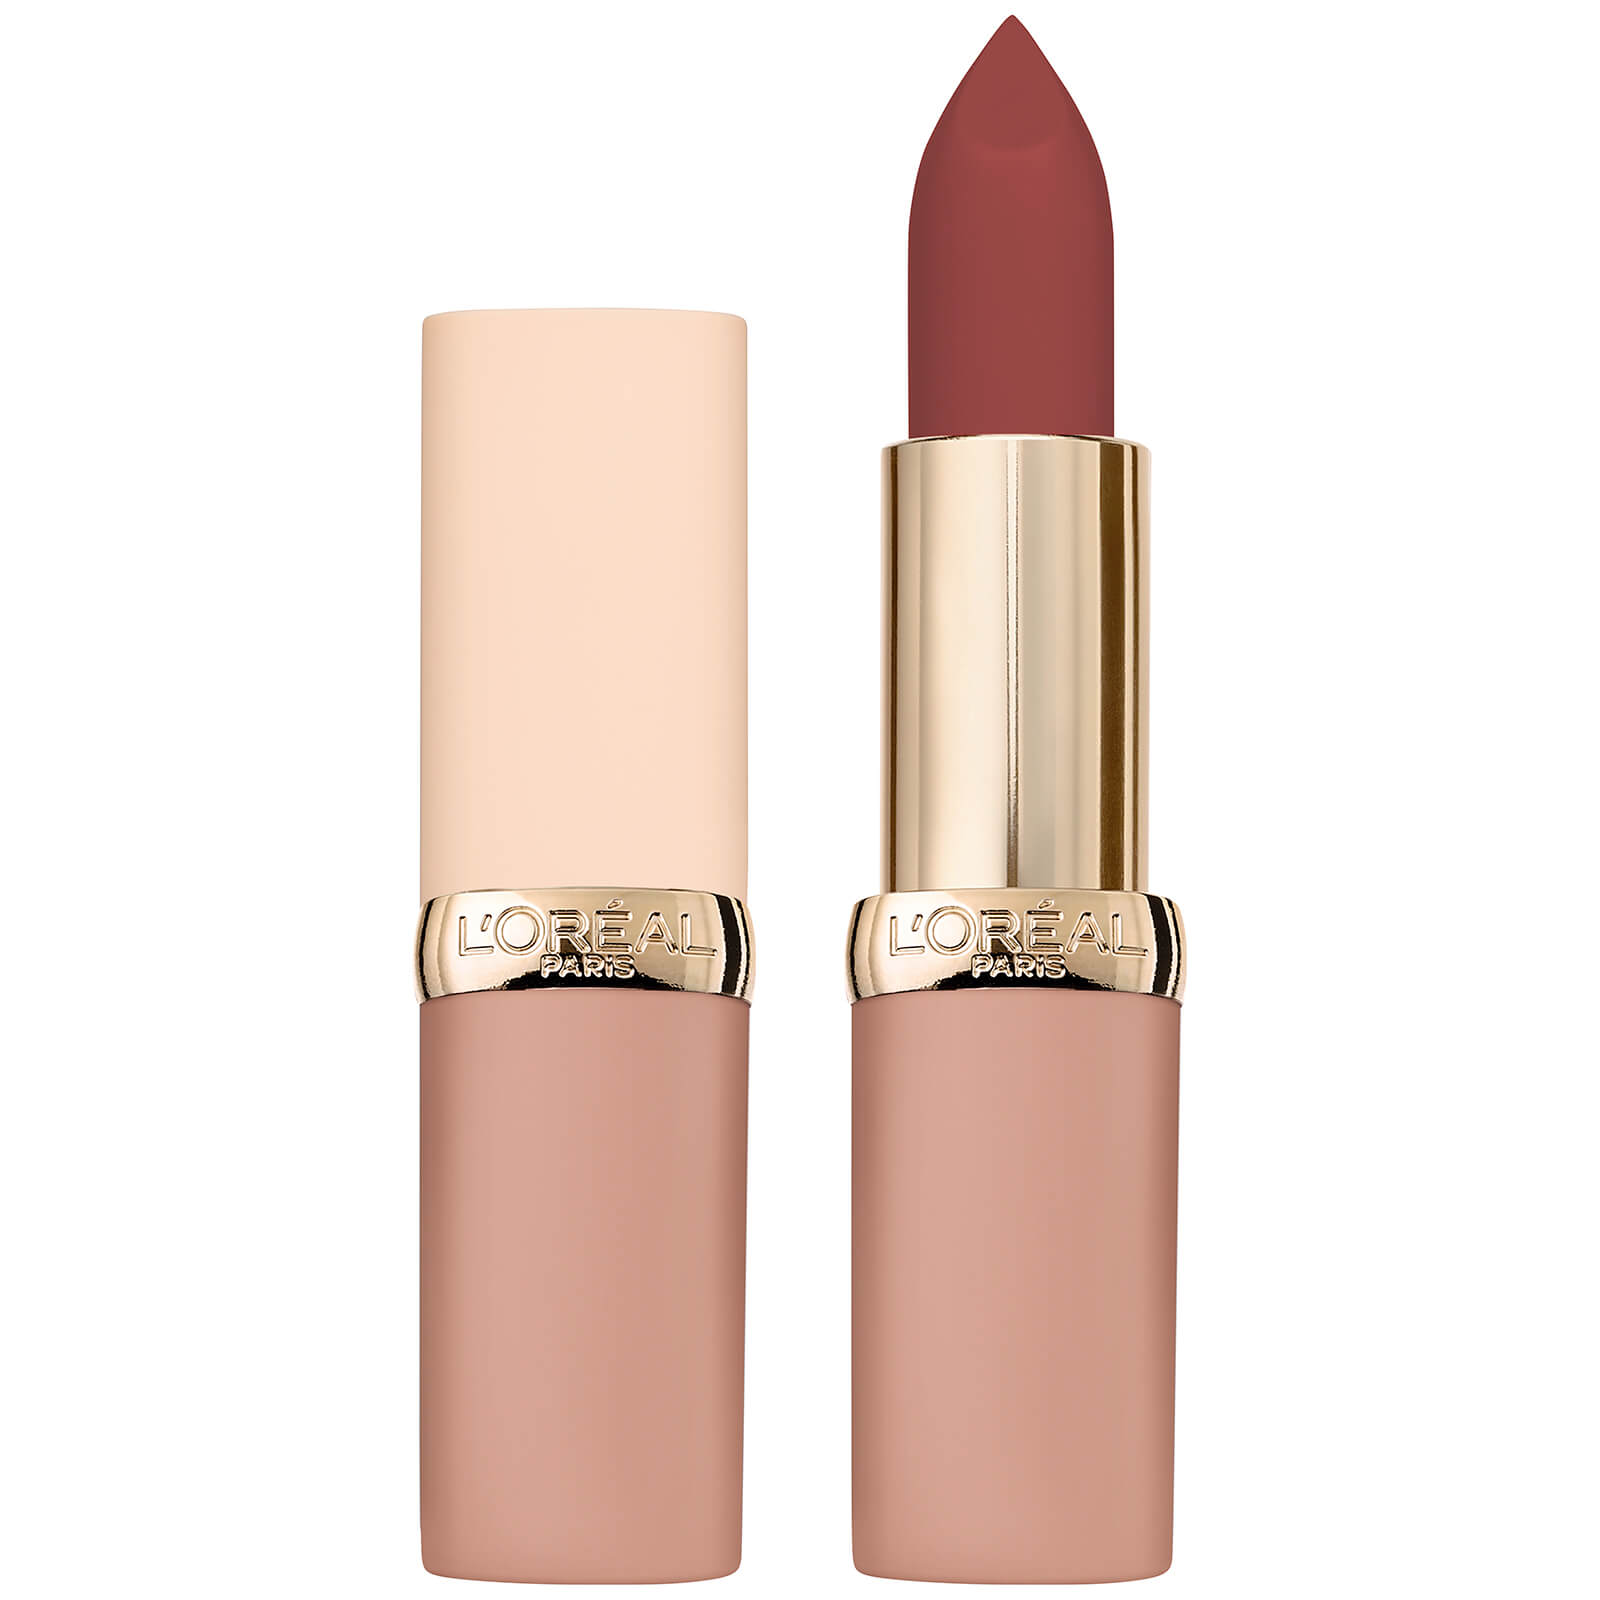 Image of L'Oréal Paris Color Riche Ultra-Matte Nude Lipstick 5g (Various Shades) - 09 No Judgement